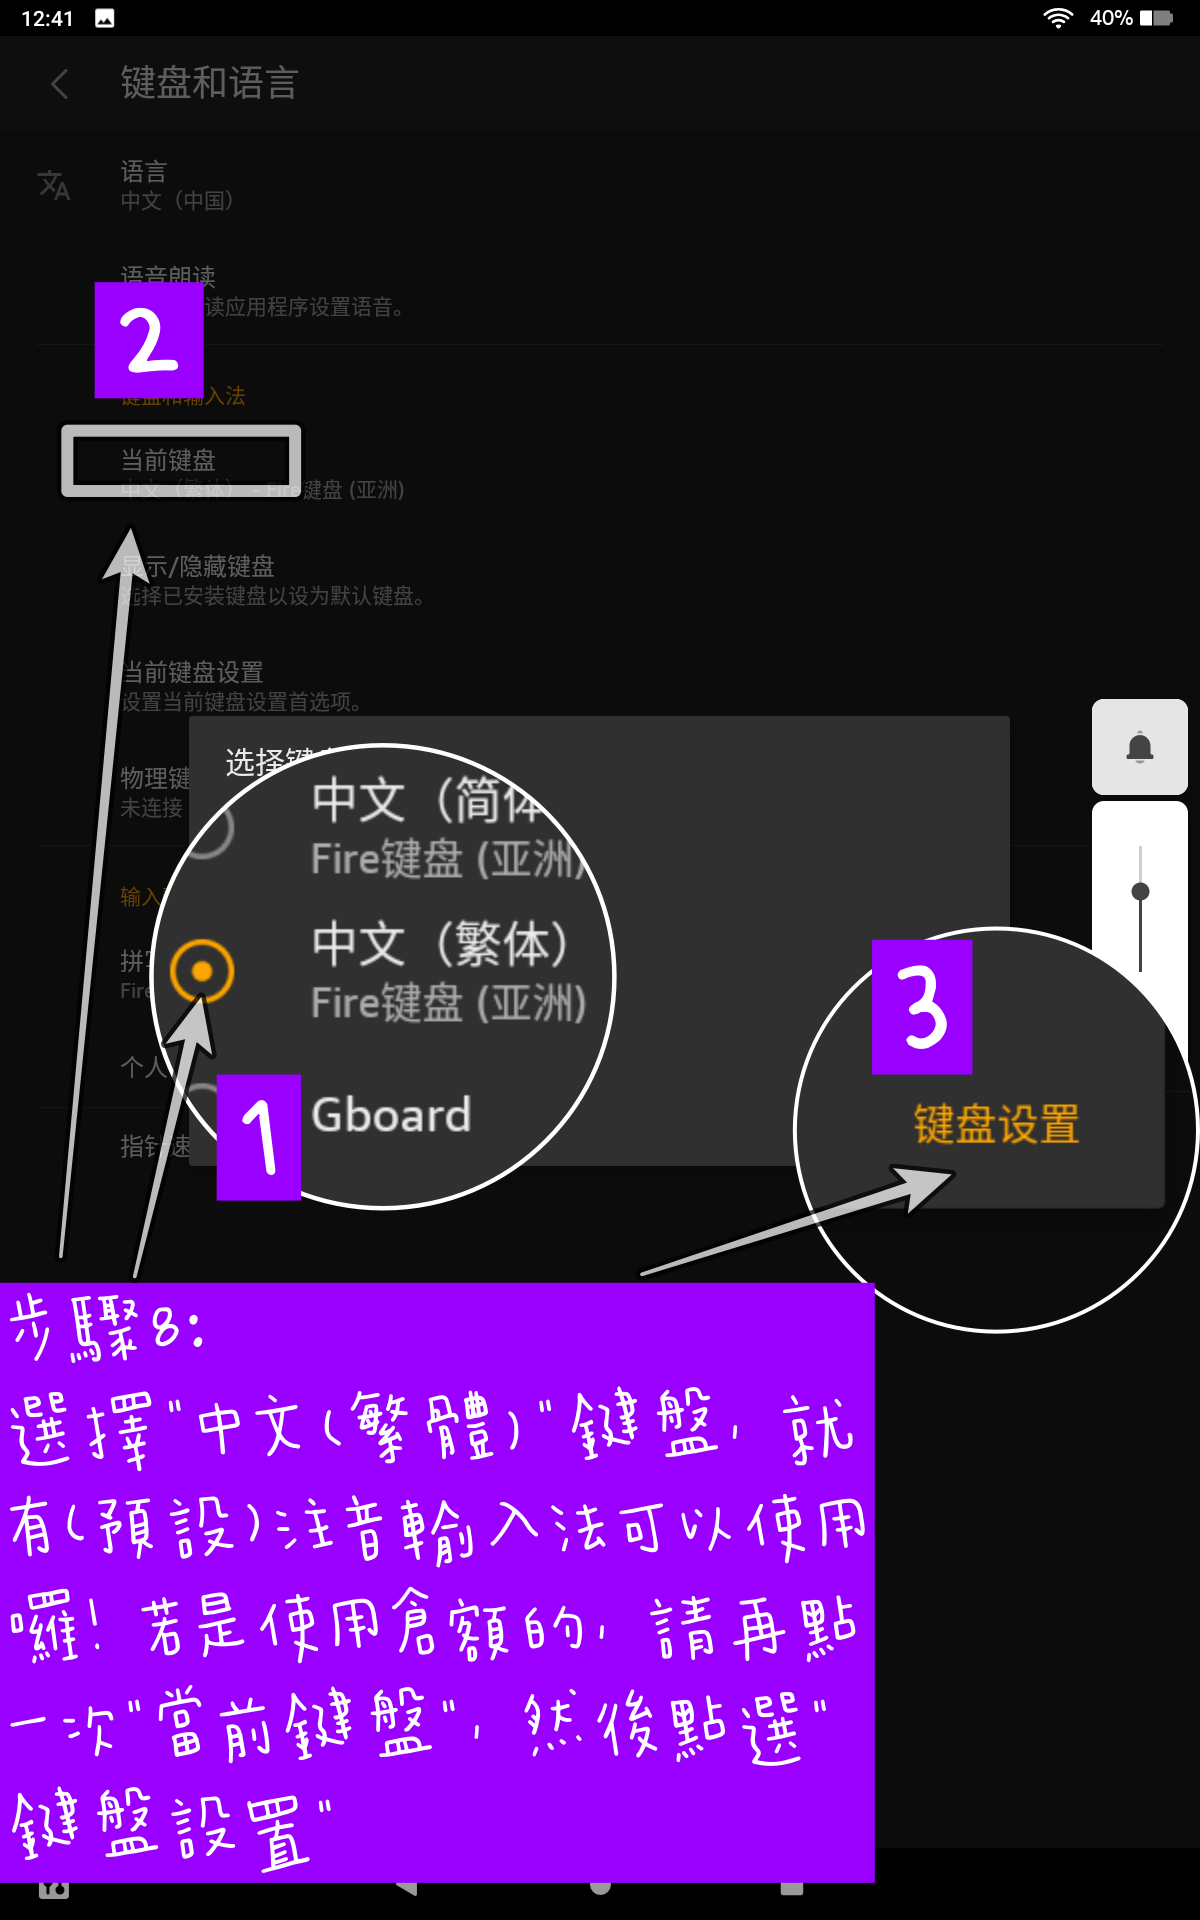 啟用AMAZON FIRE HD 10內建繁體中文輸入法 步驟8 選擇中文繁體鍵盤即有注音輸入法可以使用亦可再點選鍵盤設罝選擇其他輸入法